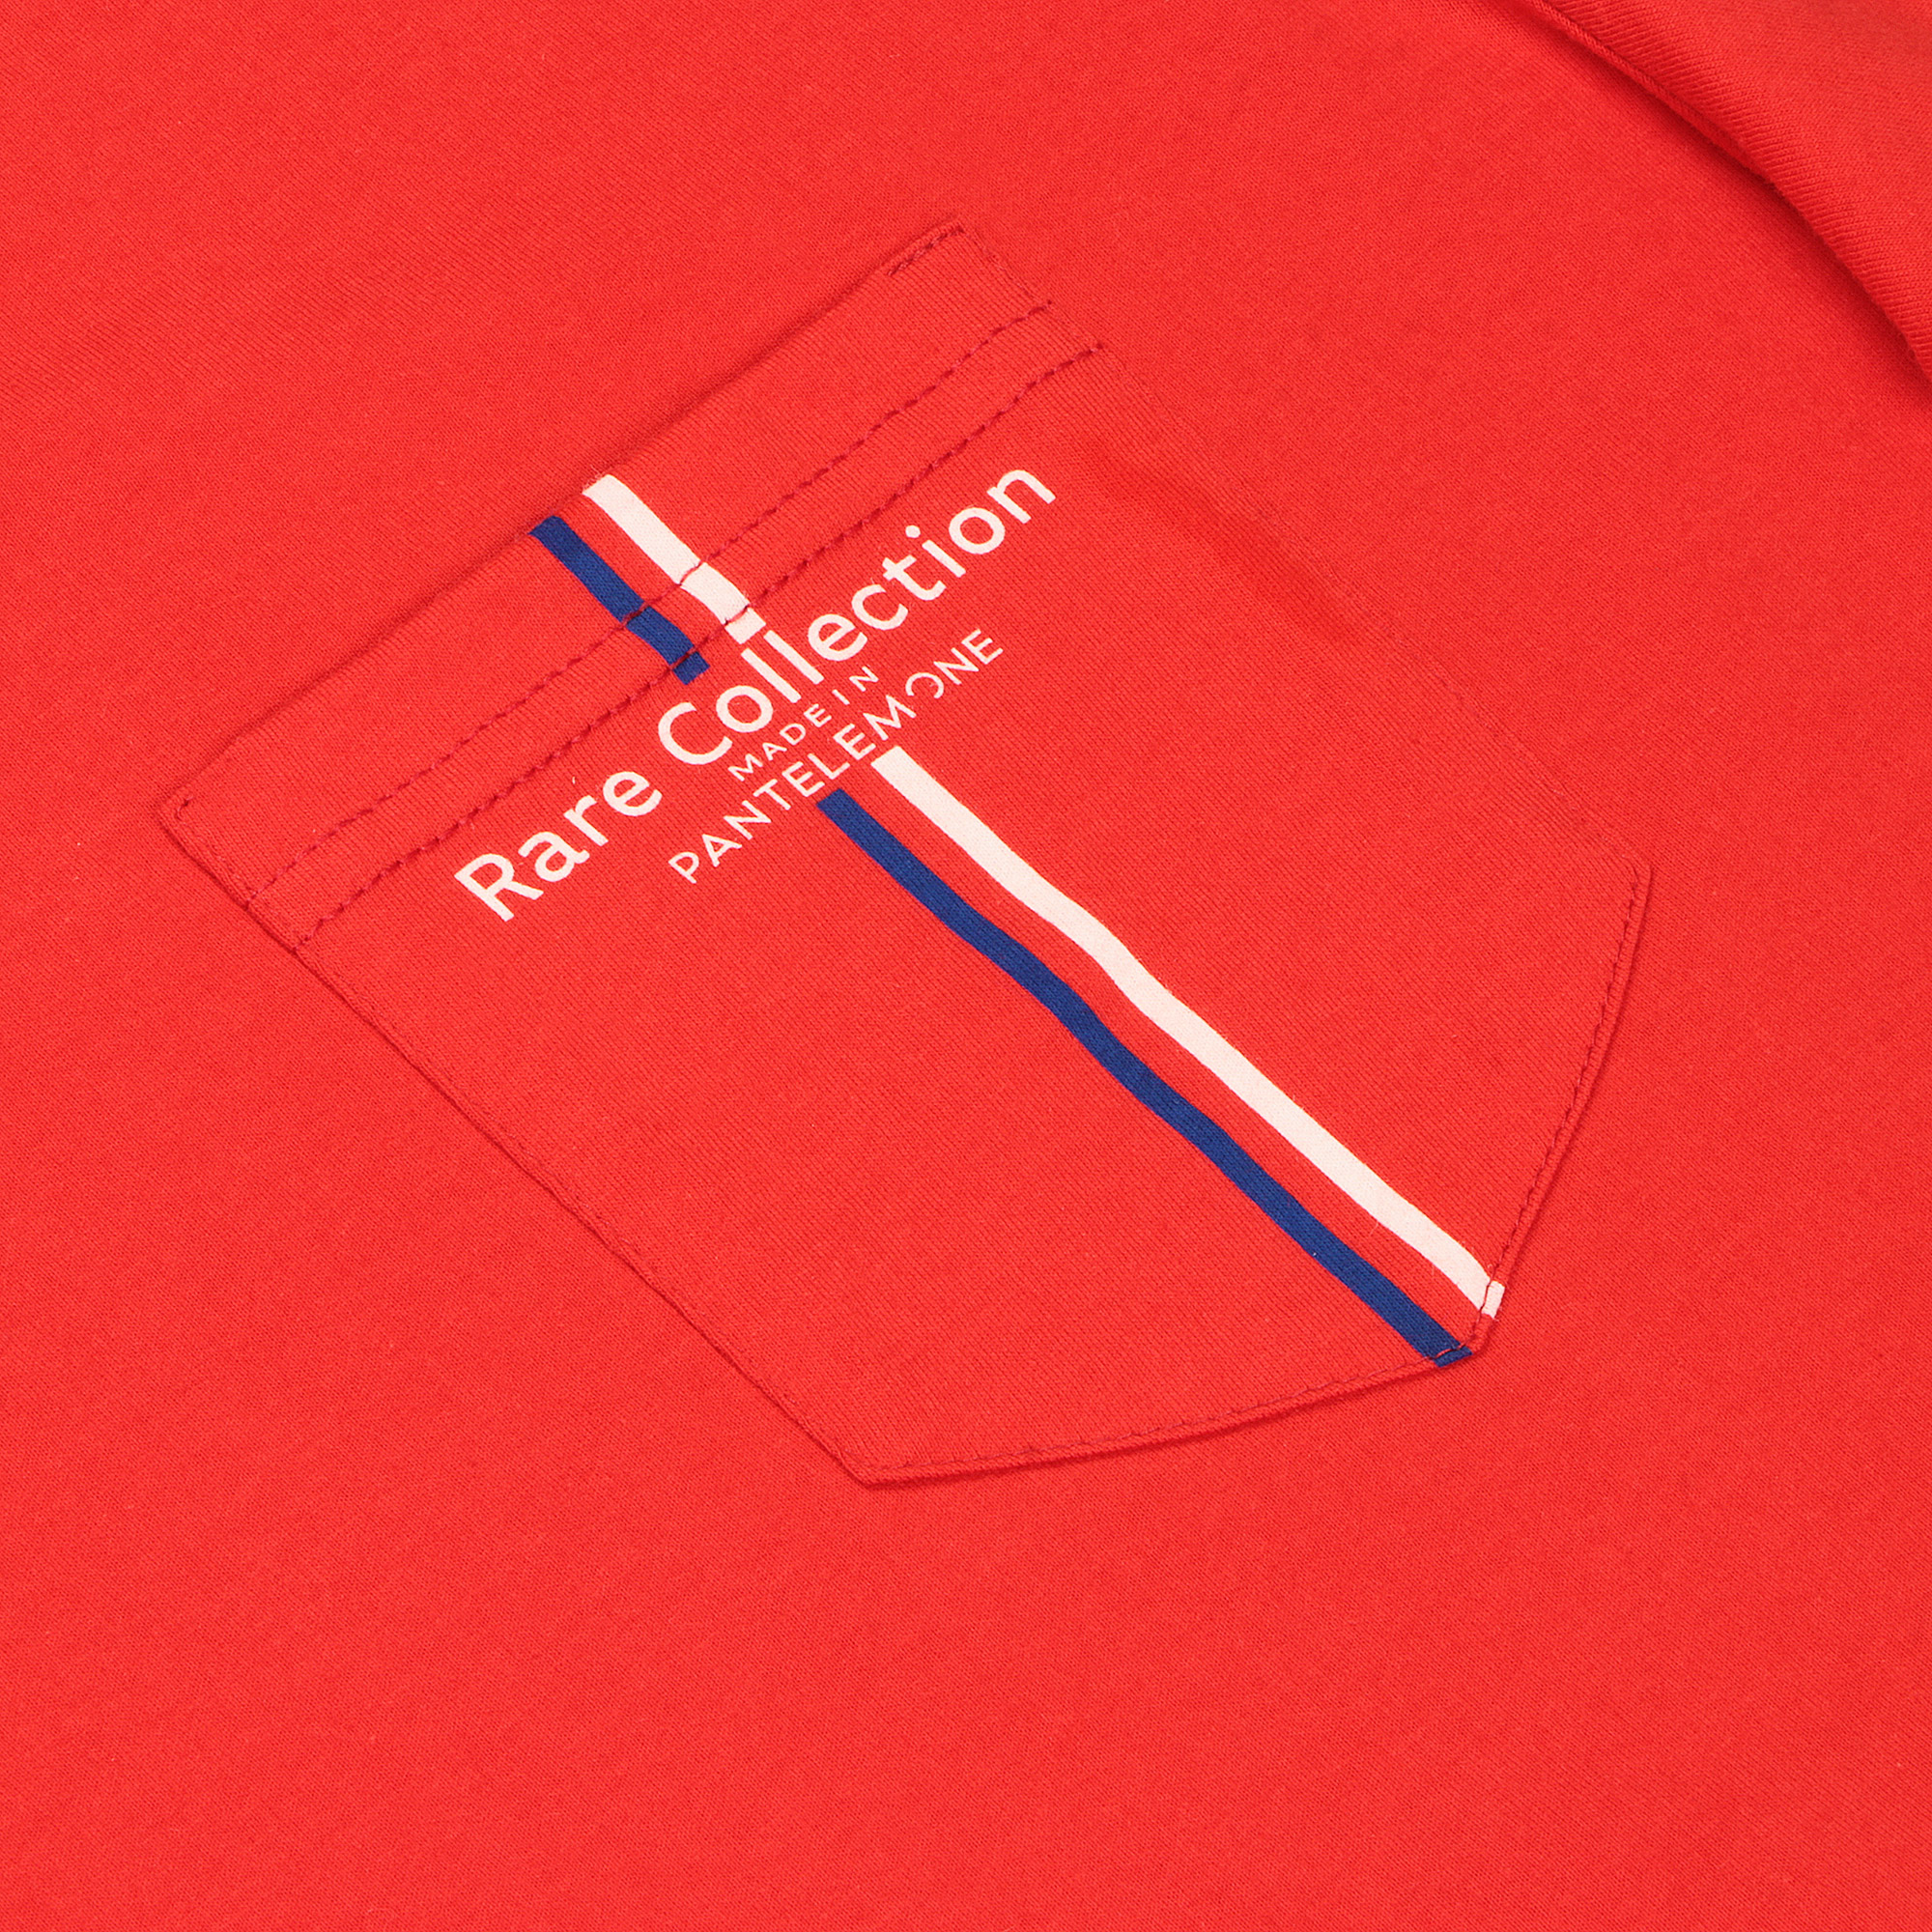 Мужская футболка Pantelemone MF-898 красная 52, цвет красный, размер 52 - фото 2